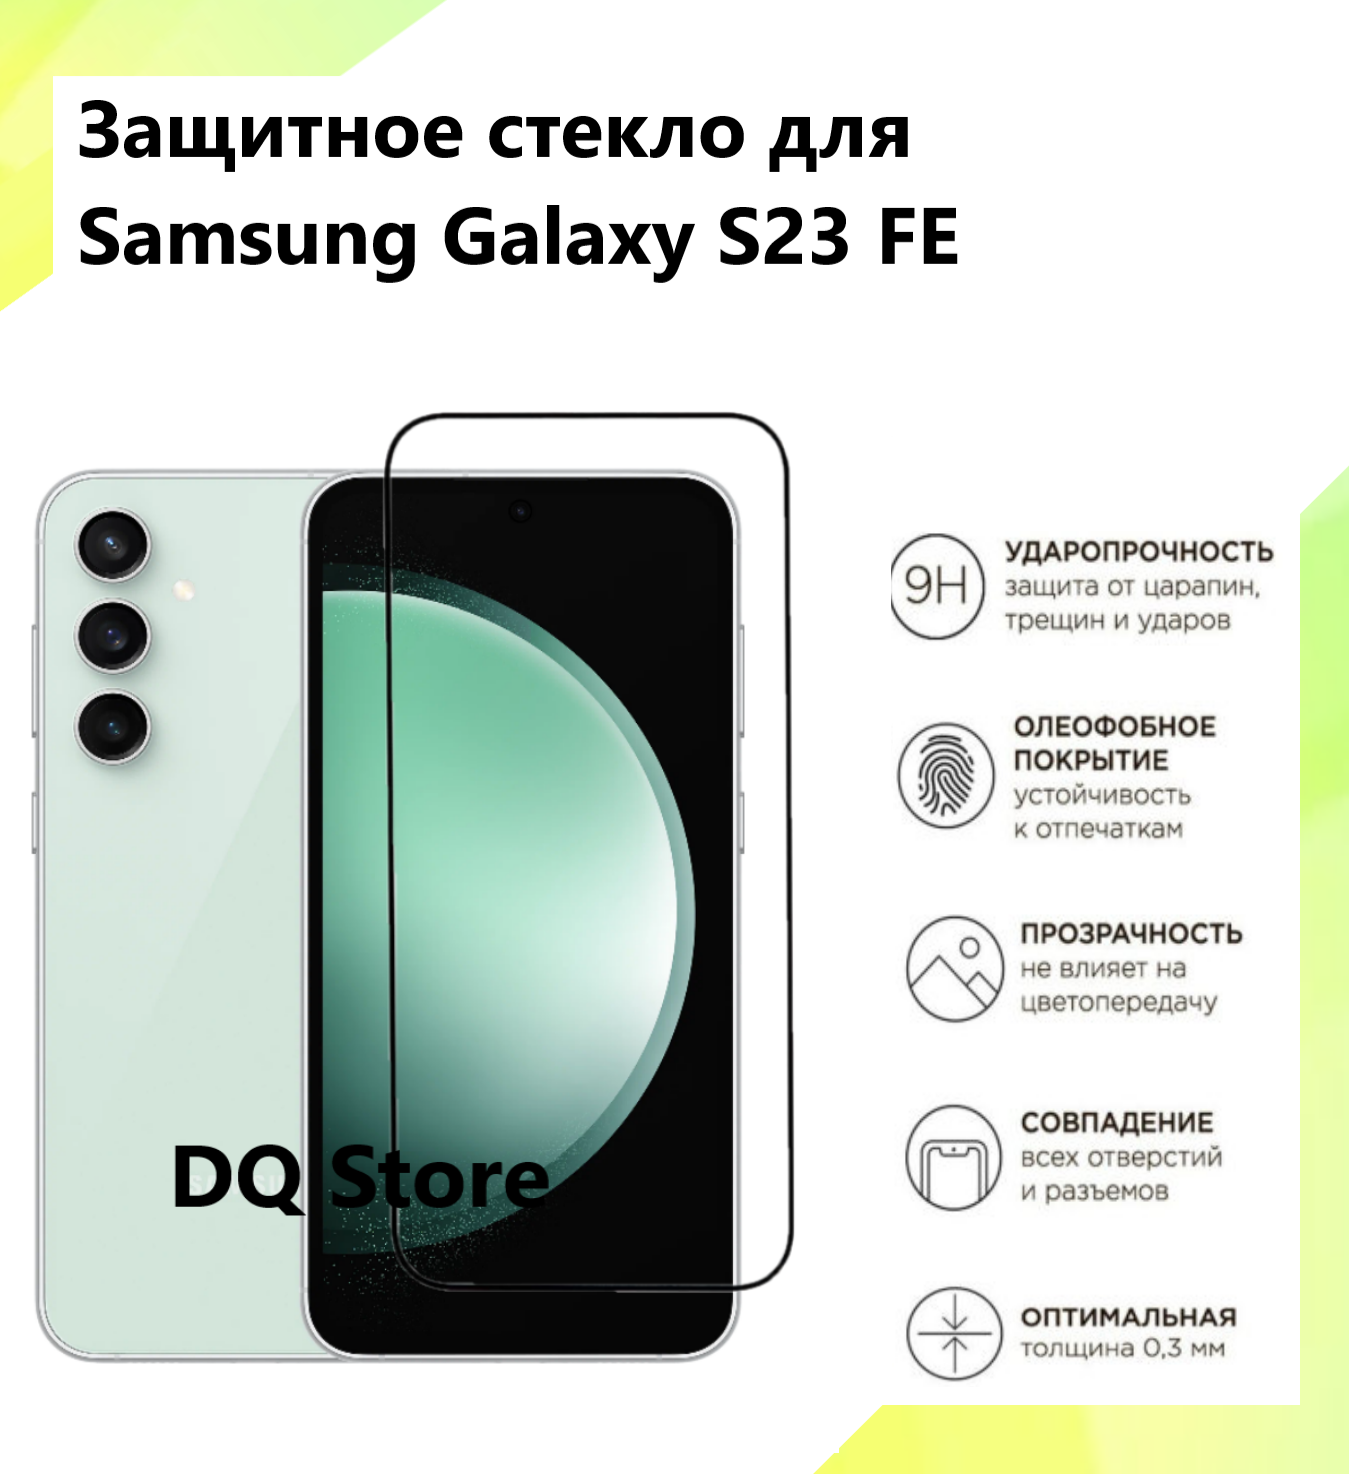 Защитное стекло на Samsung Galaxy S23 FE / Самсунг Галакси С23 ФЕ . Полноэкранное защитное стекло с олеофобным покрытием